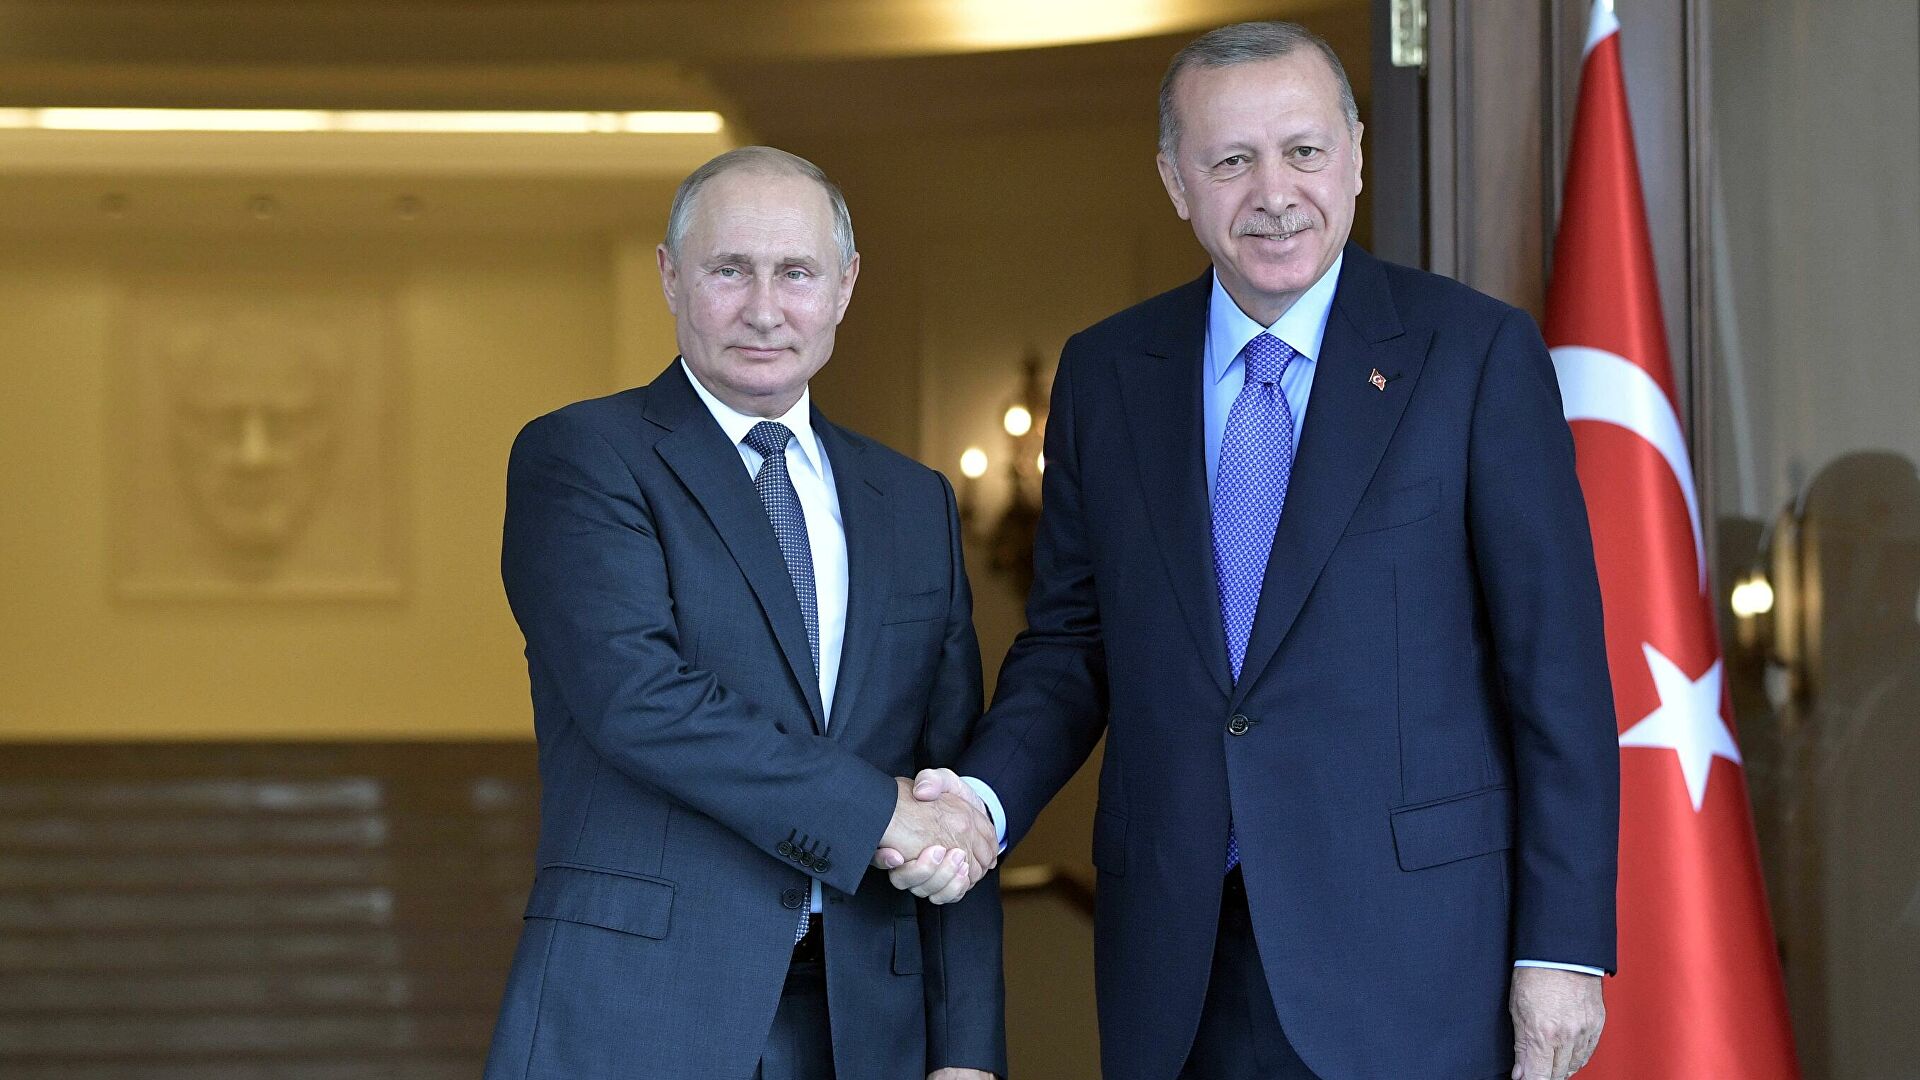 Анкара активизировала контакты с Украиной и Западом, накануне возможной встречи с Путиным